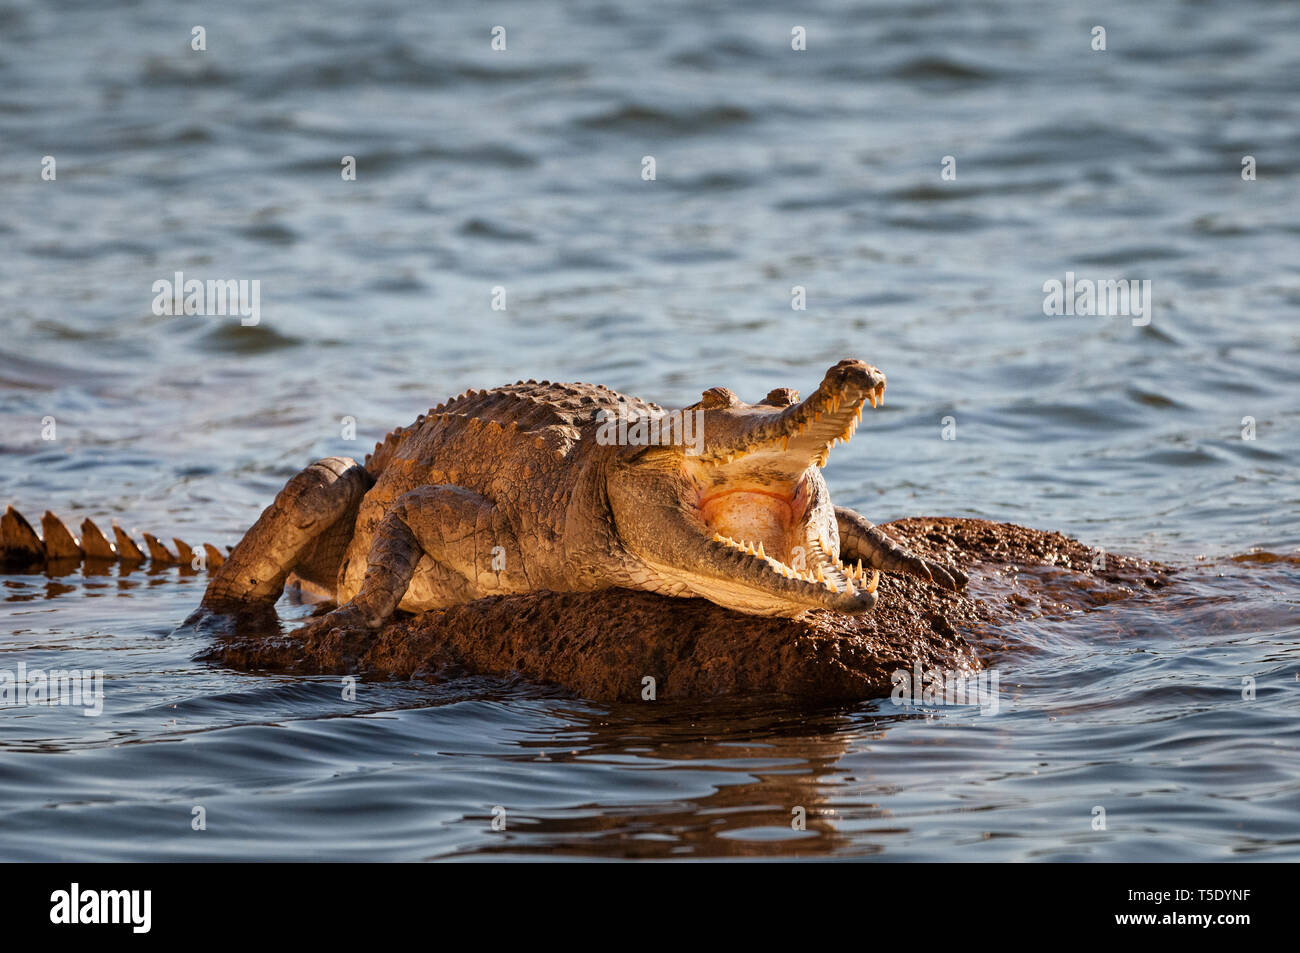 Freshwater Crocodile basking on a rock. Stock Photo